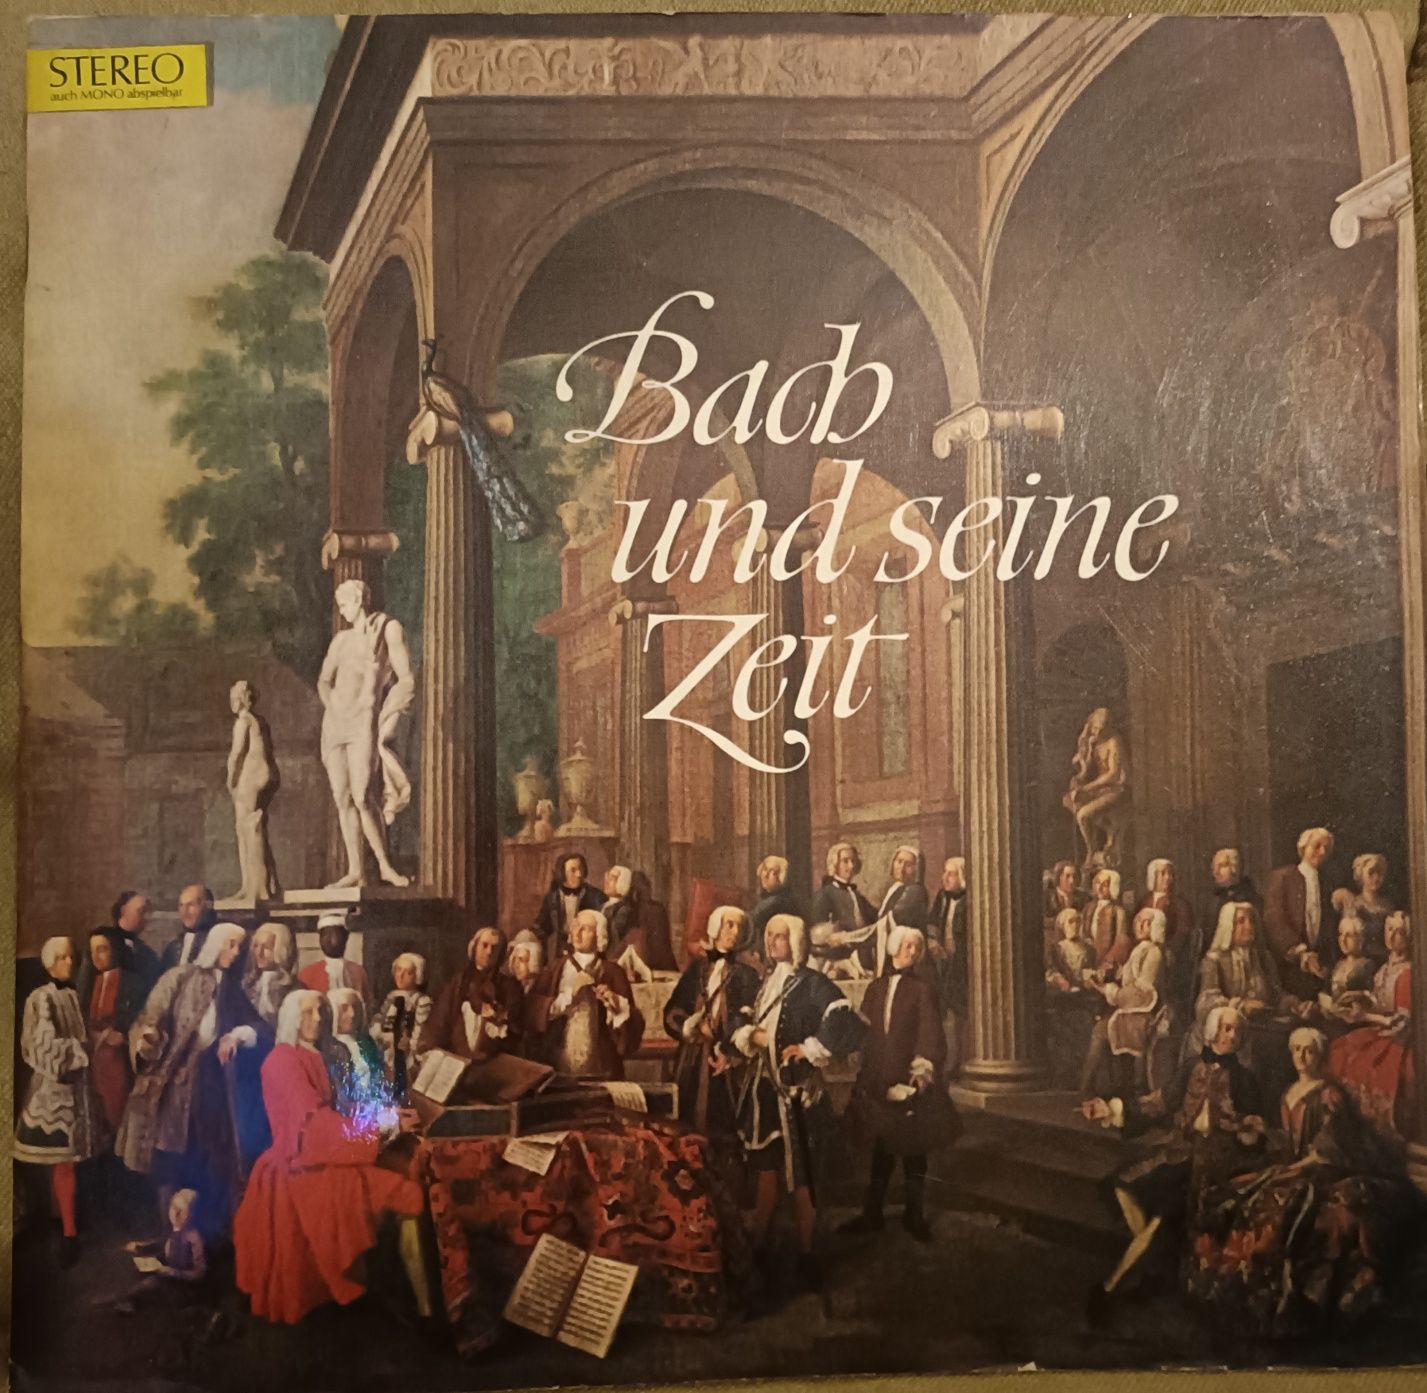 Bach und seine zeit winyl